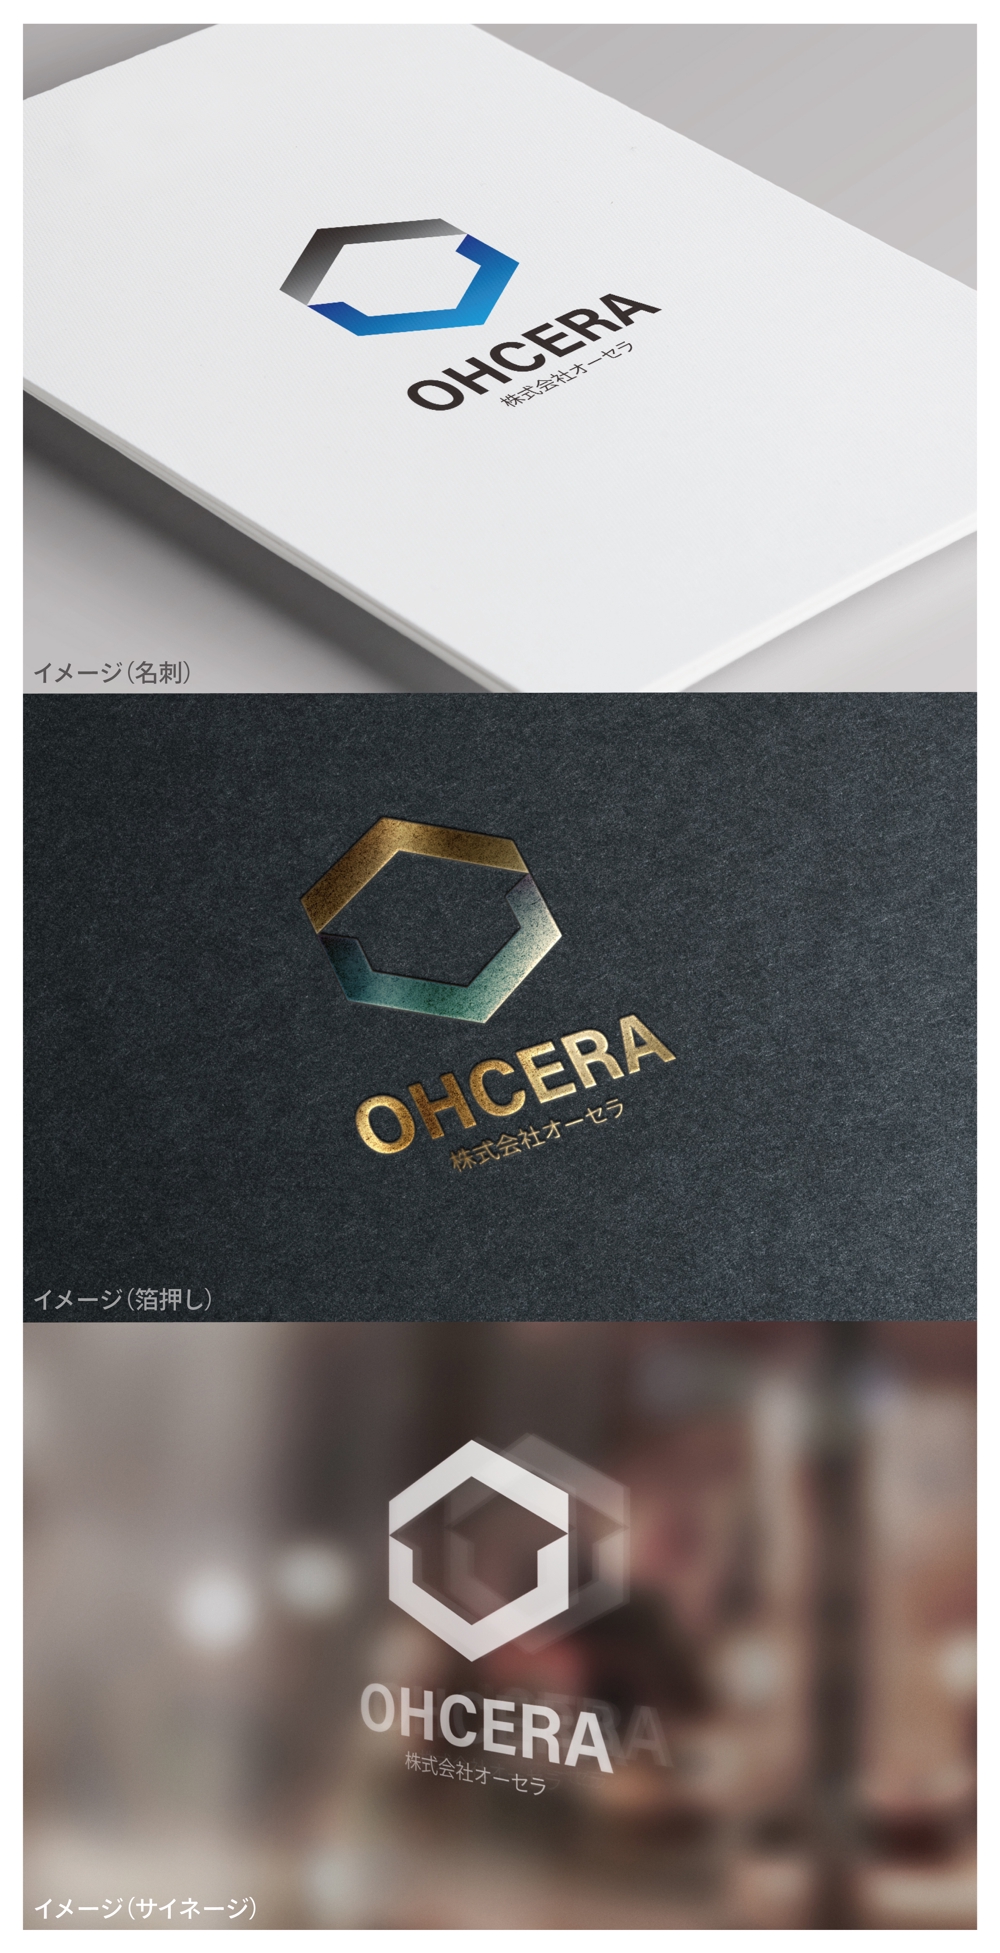 OHCERA_logo01_01.jpg